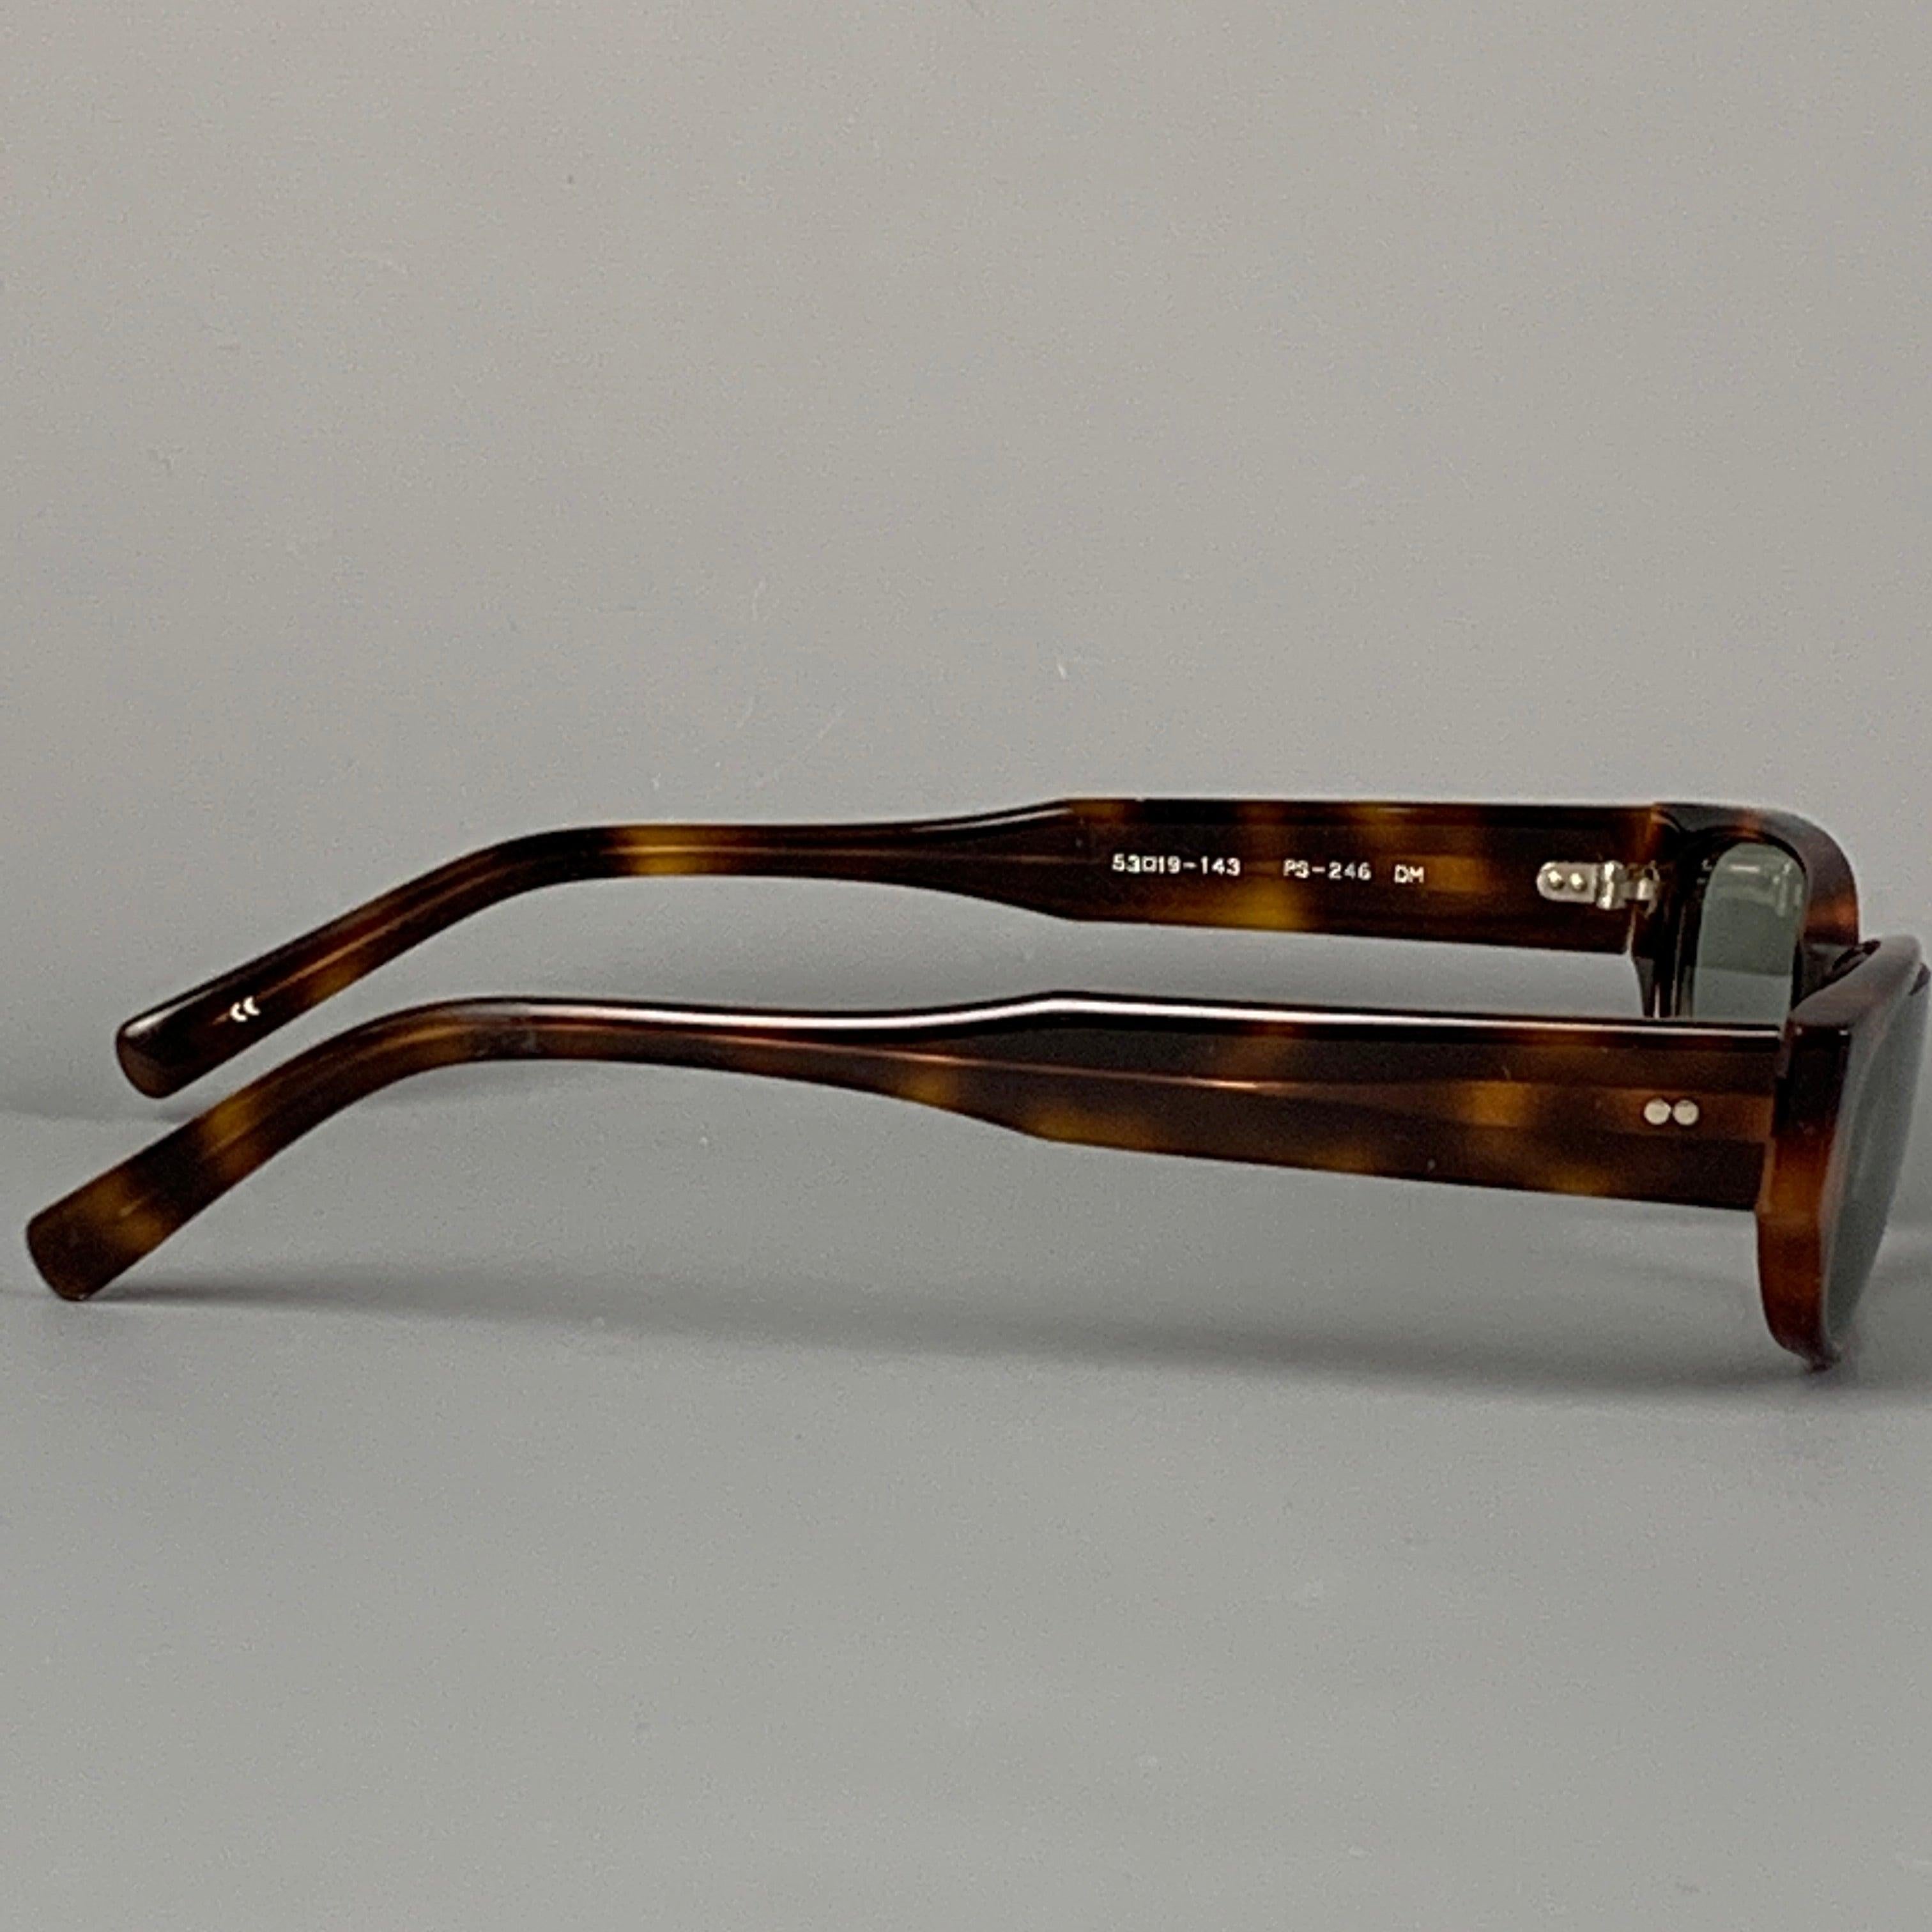 Les lunettes de soleil PAUL SMITH se déclinent en acétate d'écaille marron avec des verres teintés. Fabriqué au Japon.
Bon
Etat d'occasion. 

Marqué :   53-19-143 PS-246 DM  

Mesures : 
  Longueur : 14 cm. Hauteur : 3 cm.
  
  
 
Référence :